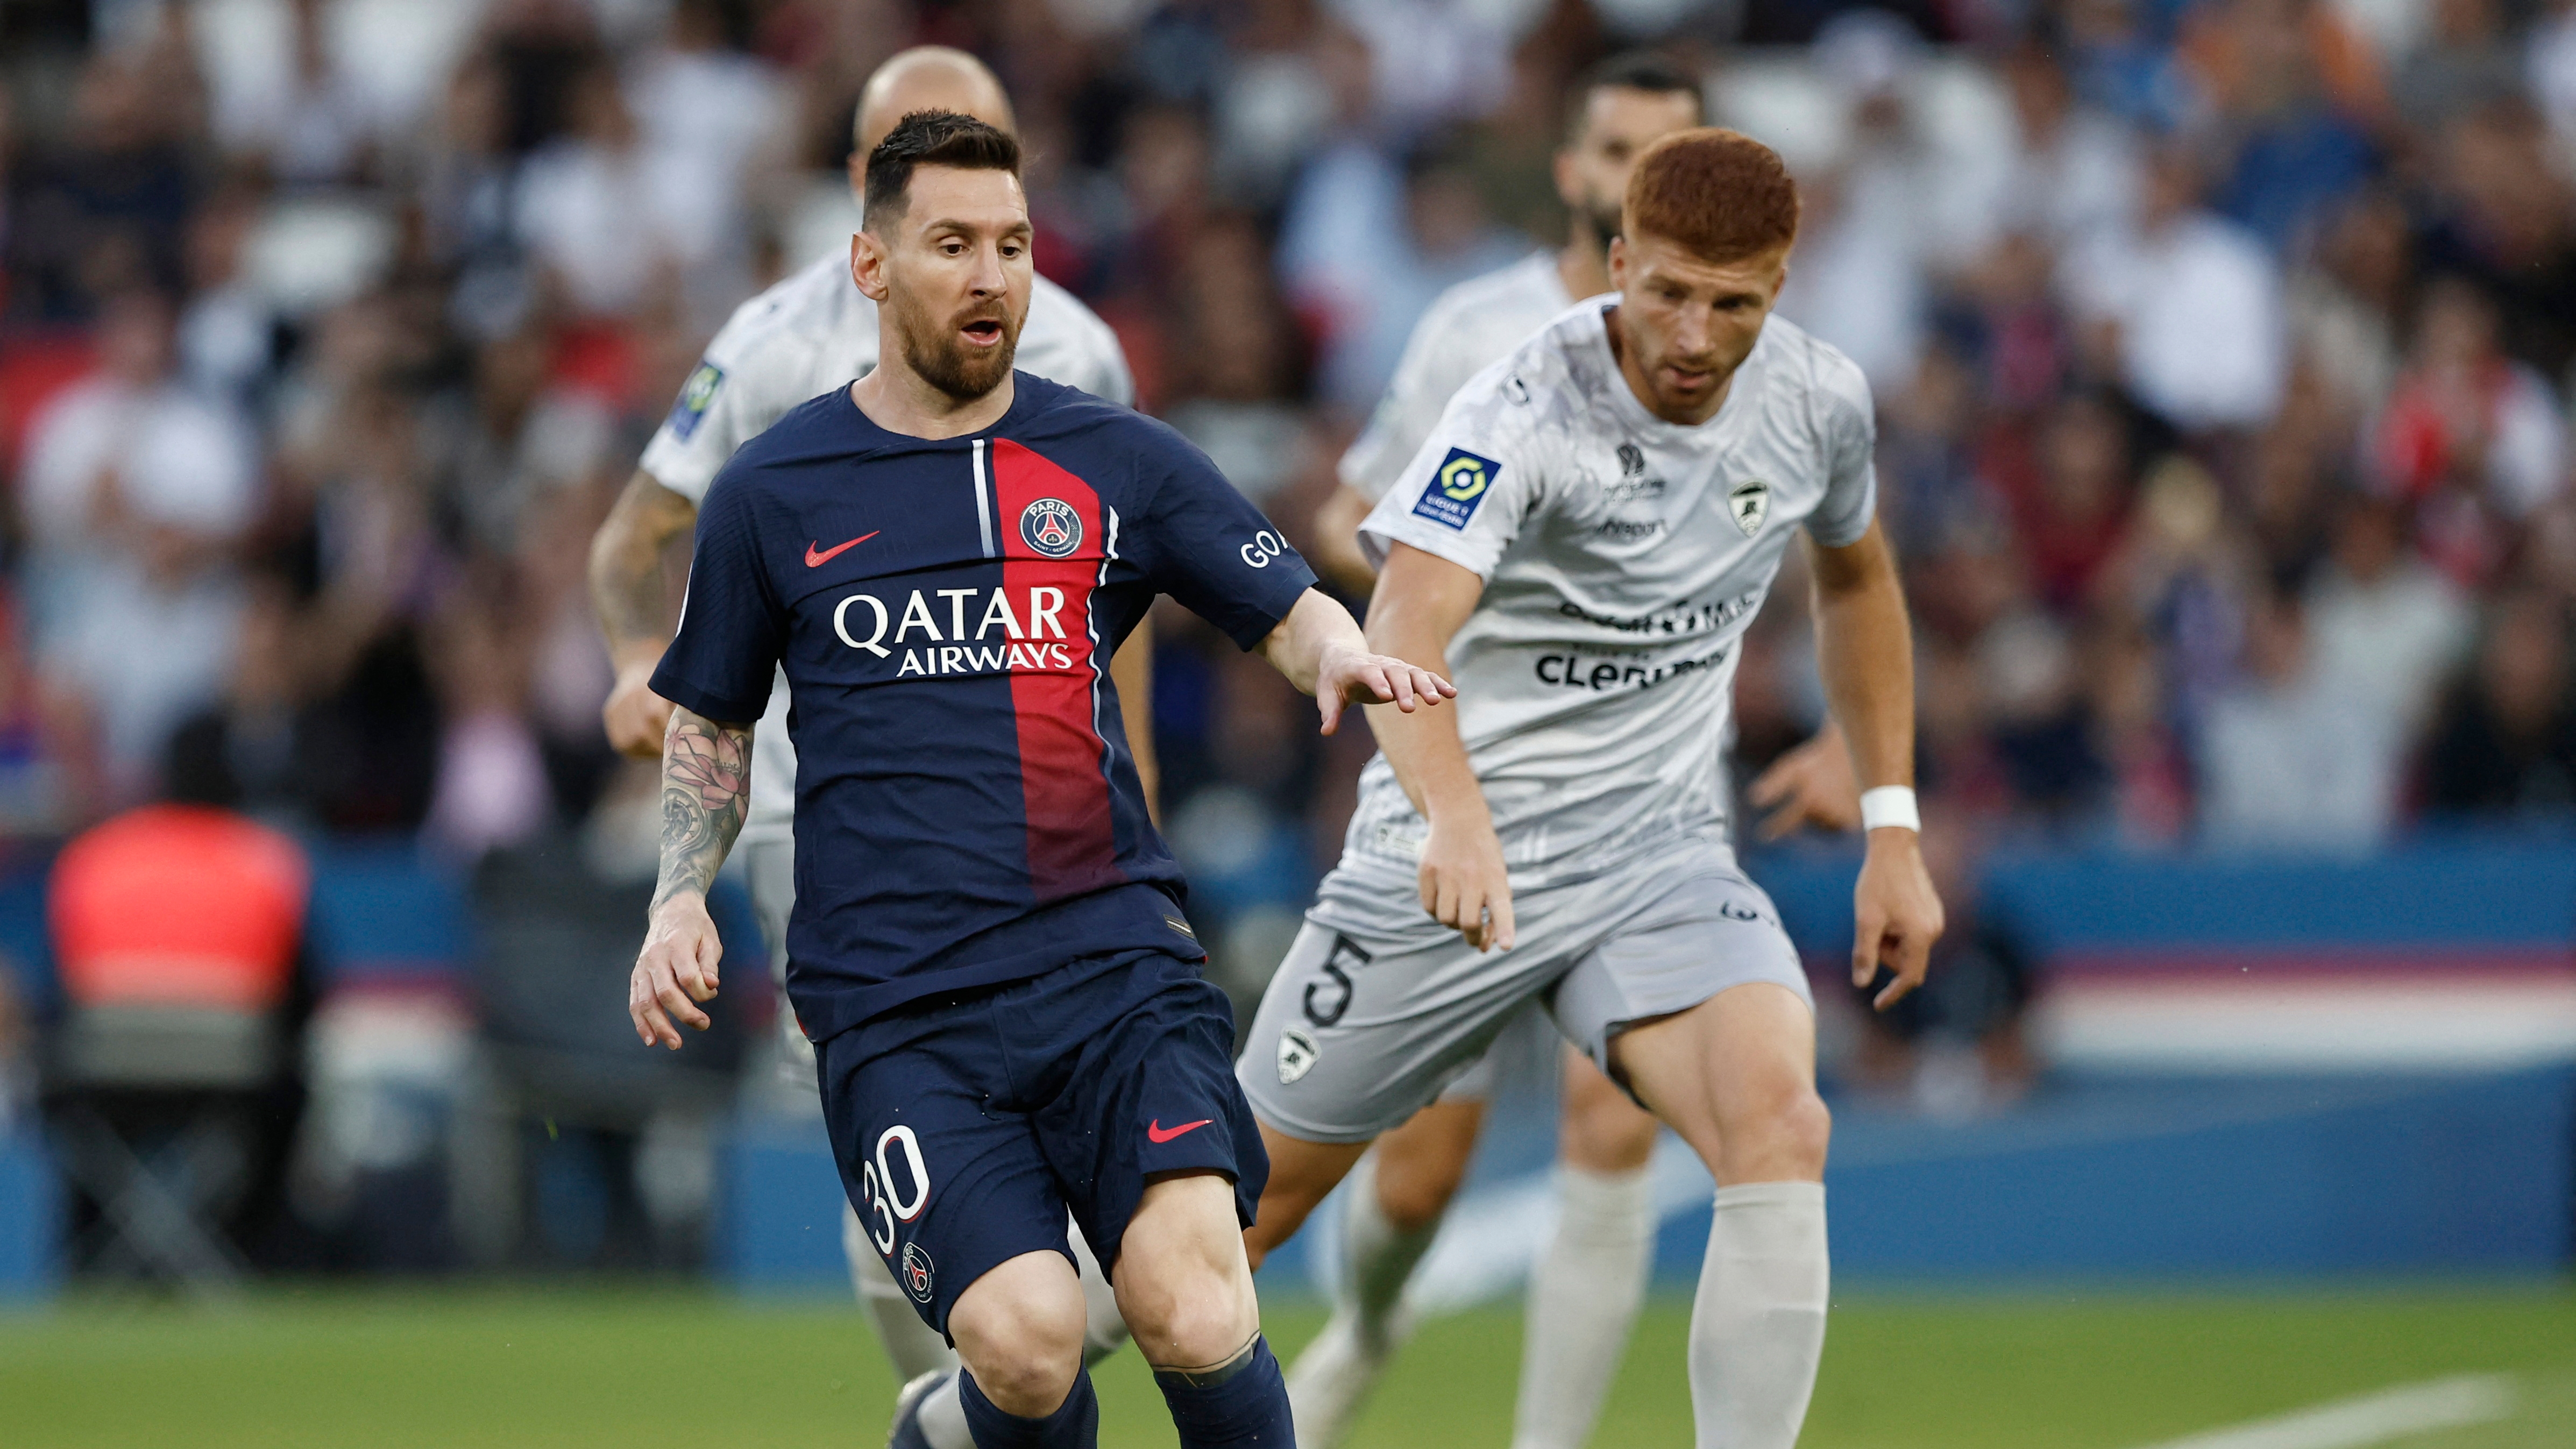 PSG empata 2-2 con Clermont en el último partido de Messi en Parque de los Príncipes